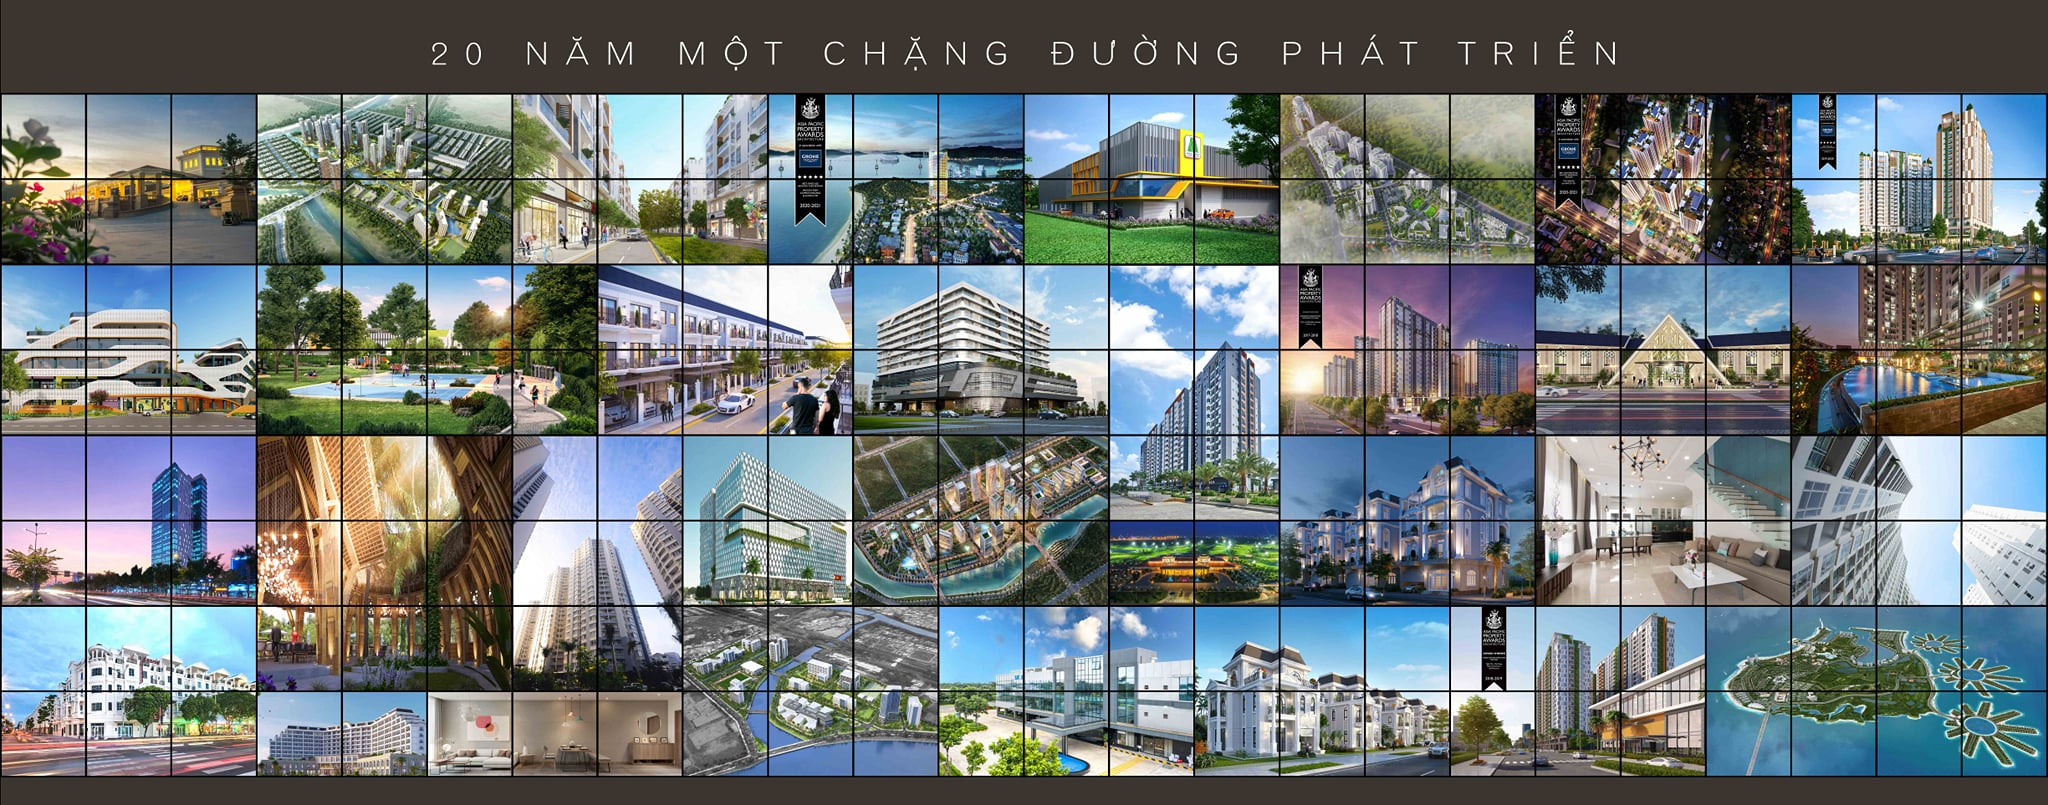 Công ty TNHH Tư vấn Thiết kế Xây dựng Anh Linh - Alinco ảnh 2